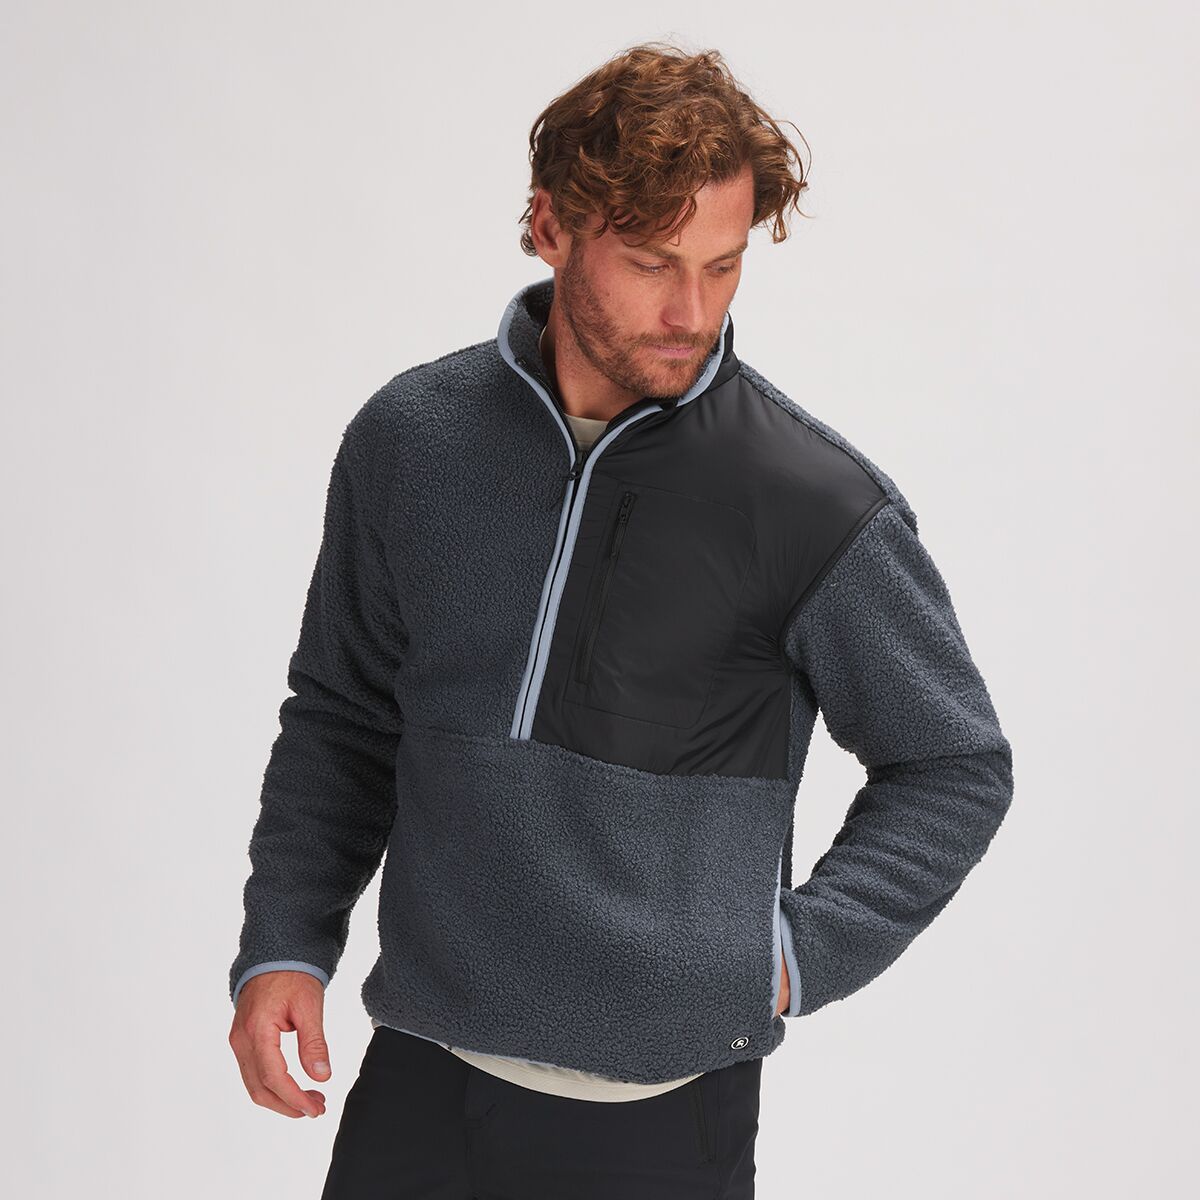 Backcountry GOAT Fleece 1/2-Zip Pullover Sweater - Men's